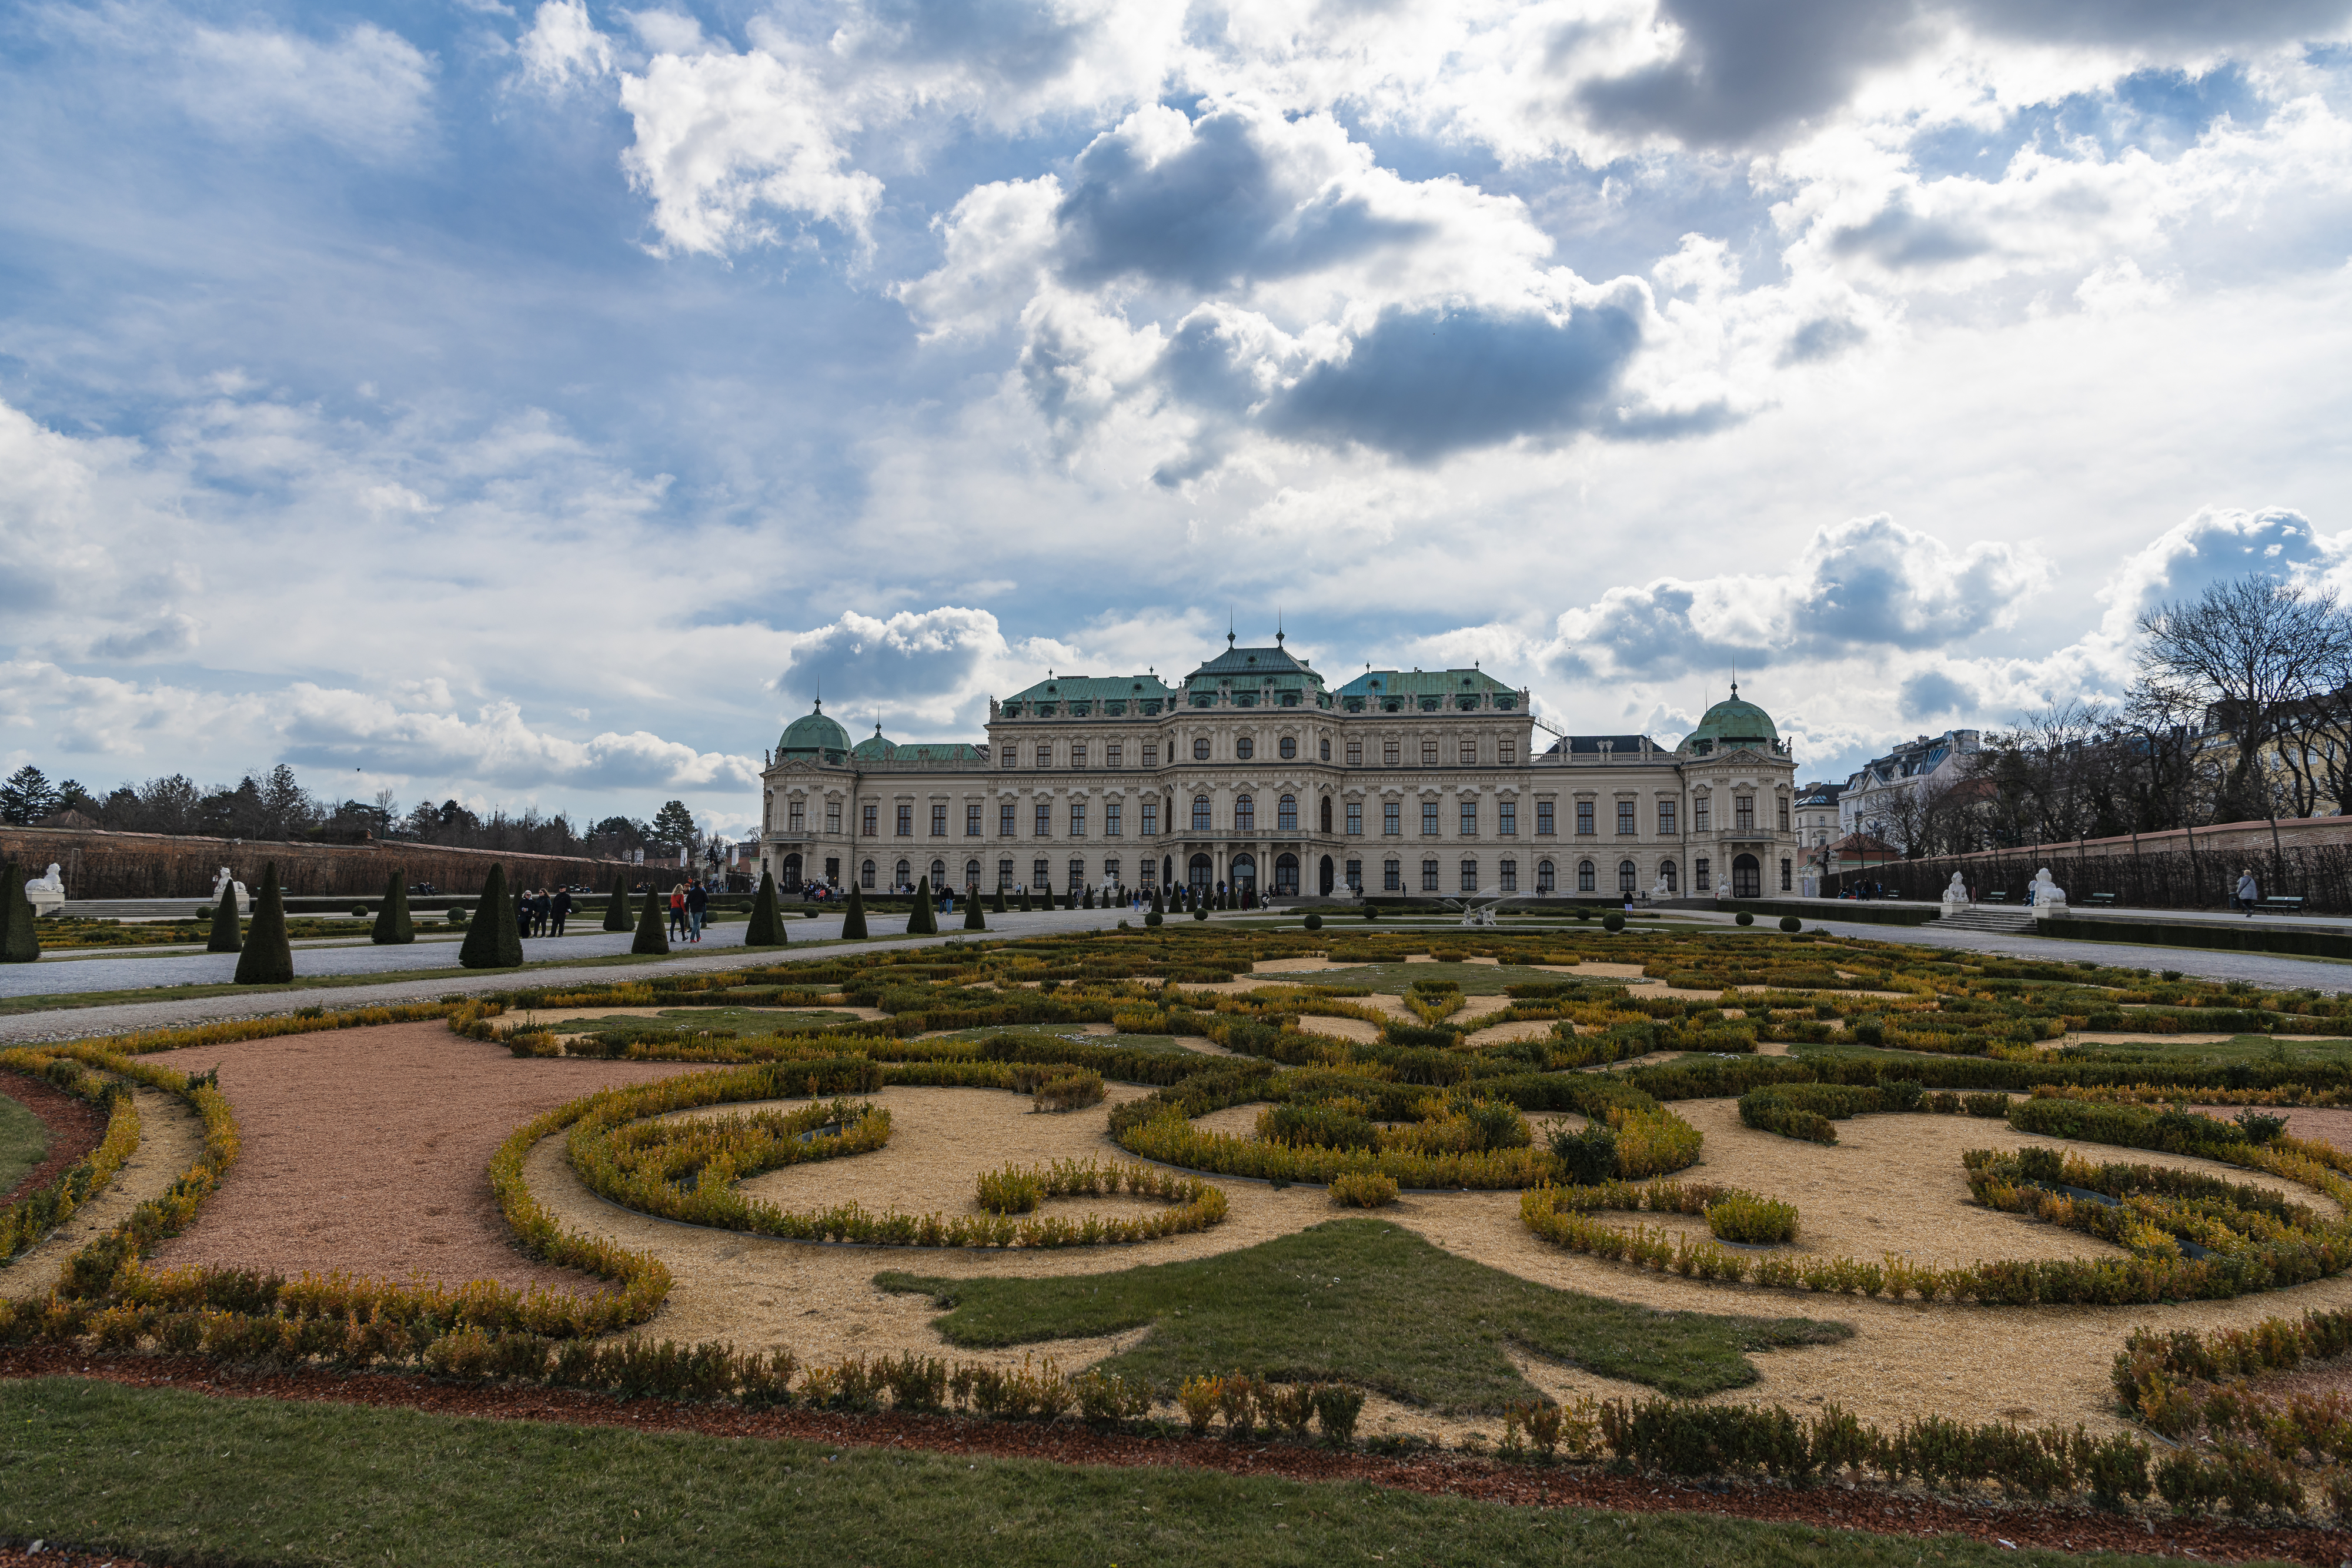 오스트리아 빈에 있는 벨베데레 미술관은 18세기 초 여름 별장용 궁전으로 지어졌다. 합스부르크 왕가의 소장품 전시장이었던 곳으로, 웅장한 건축물과 화려한 정원이 어우러져 있다.  이승원 작가 제공